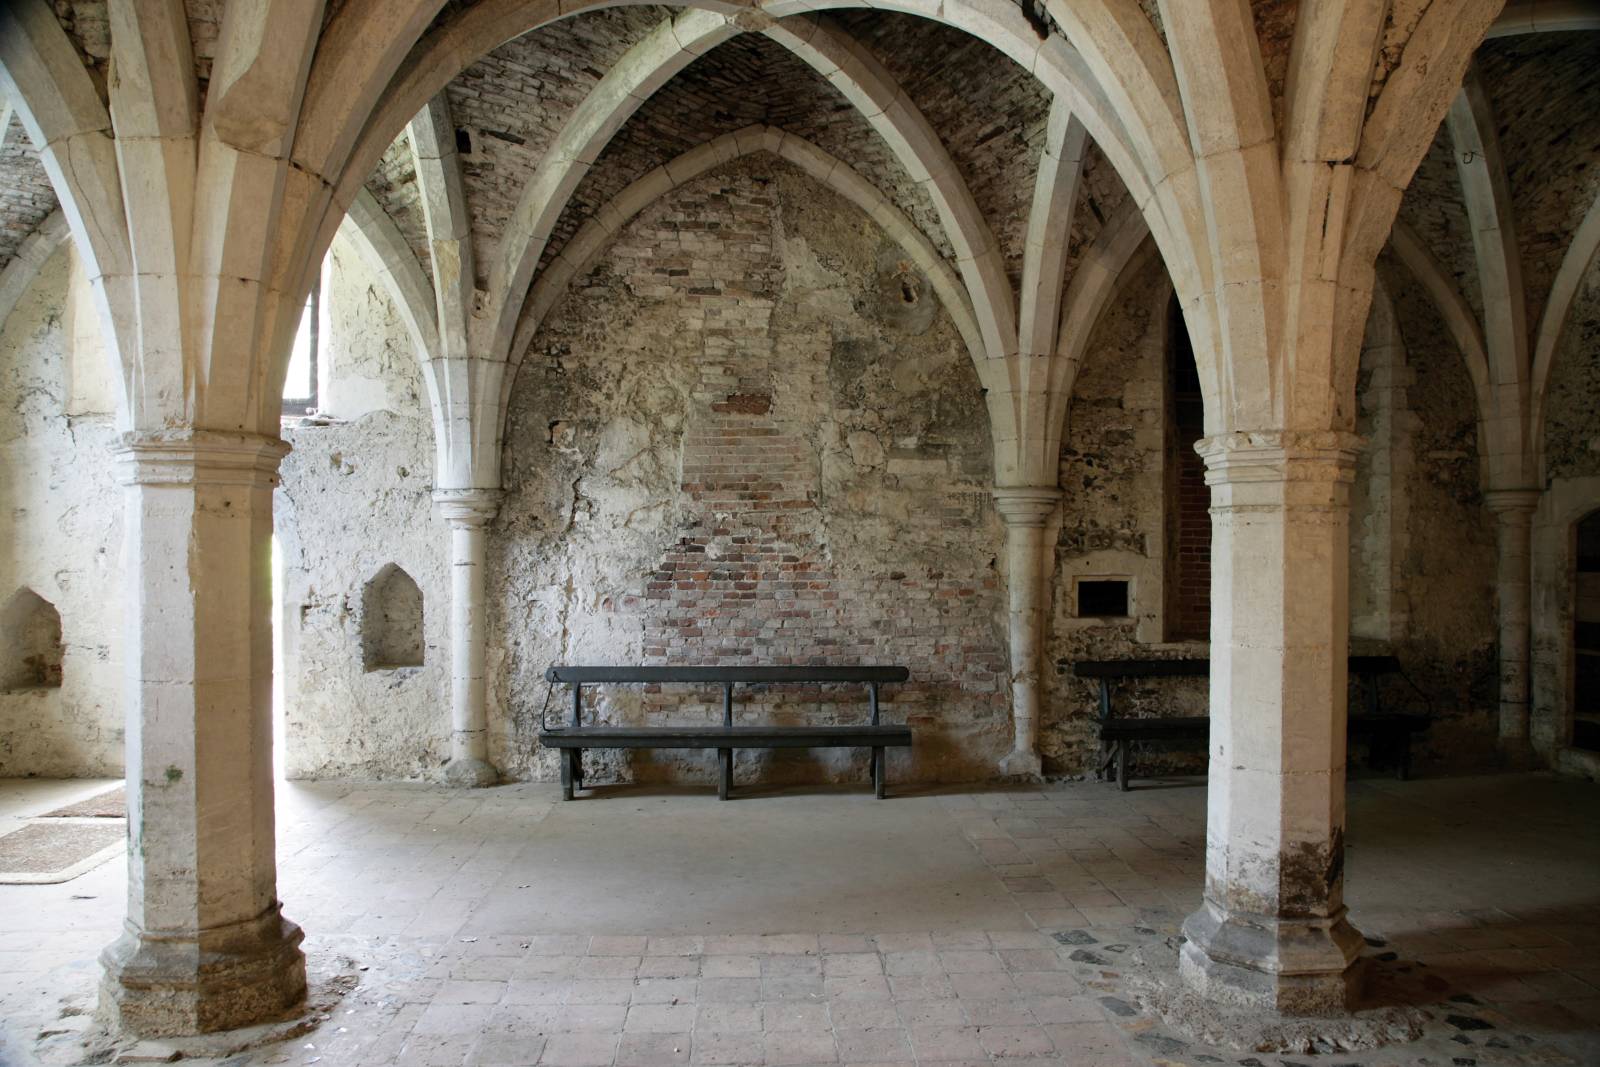 Walsingham Abbey guidebook - 2 of 3